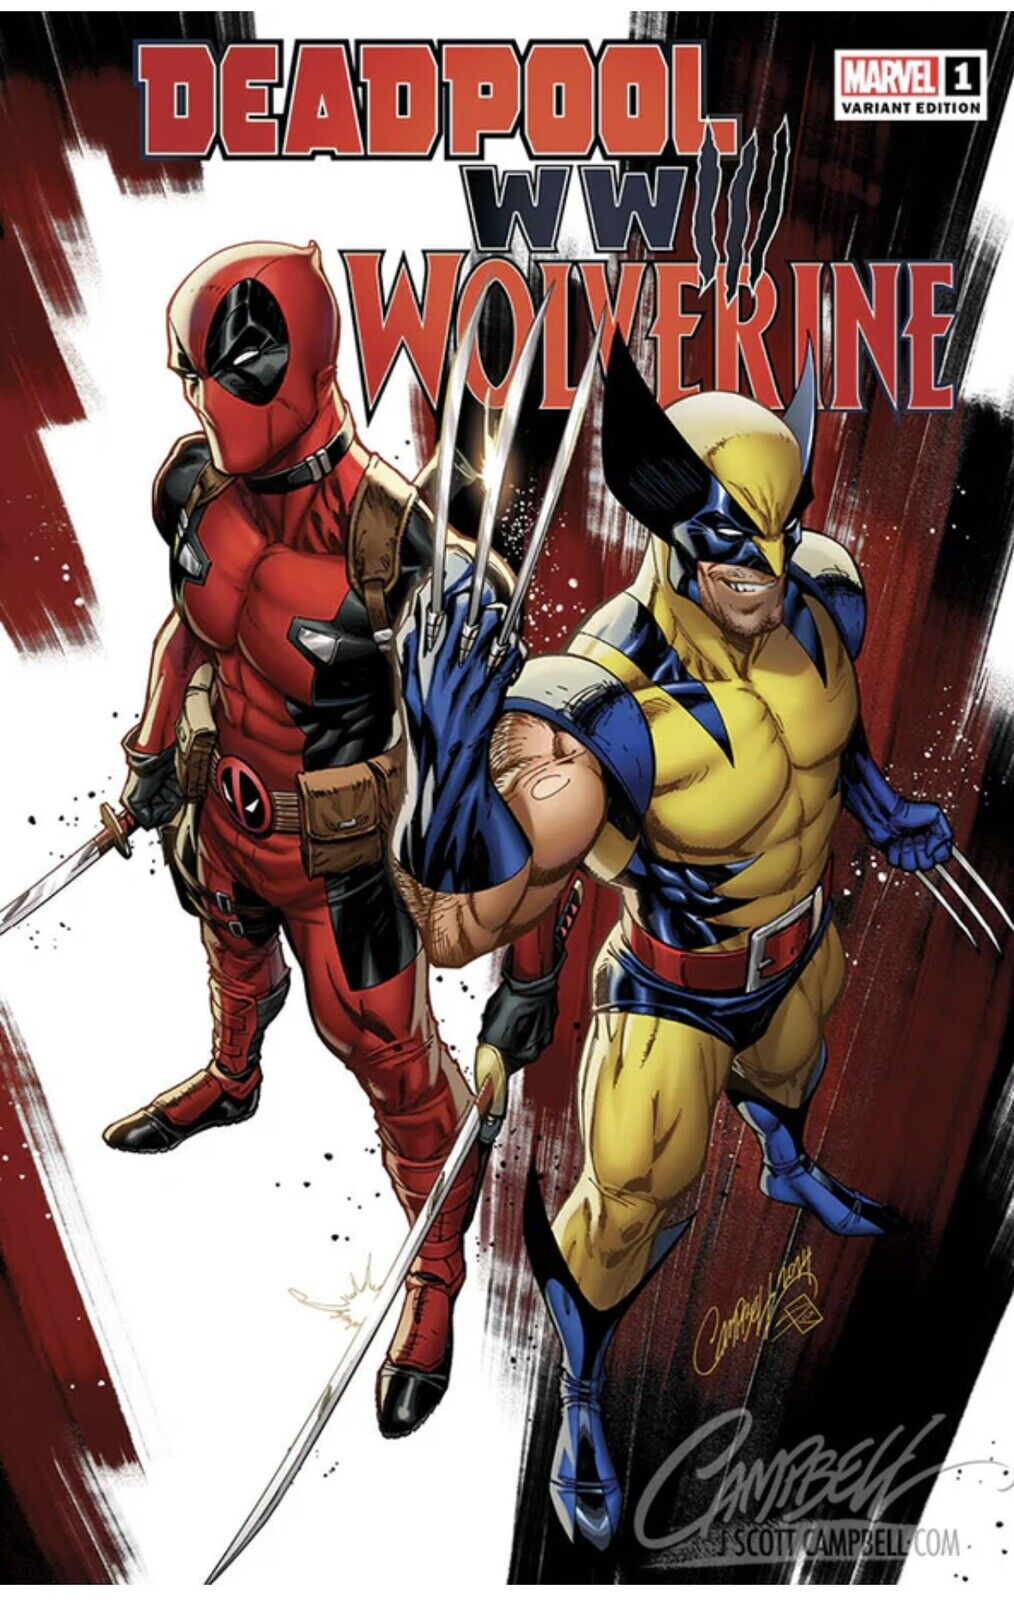 Deadpool & Wolverine: WWIII #1 JSC Artist EXCLUSIVE